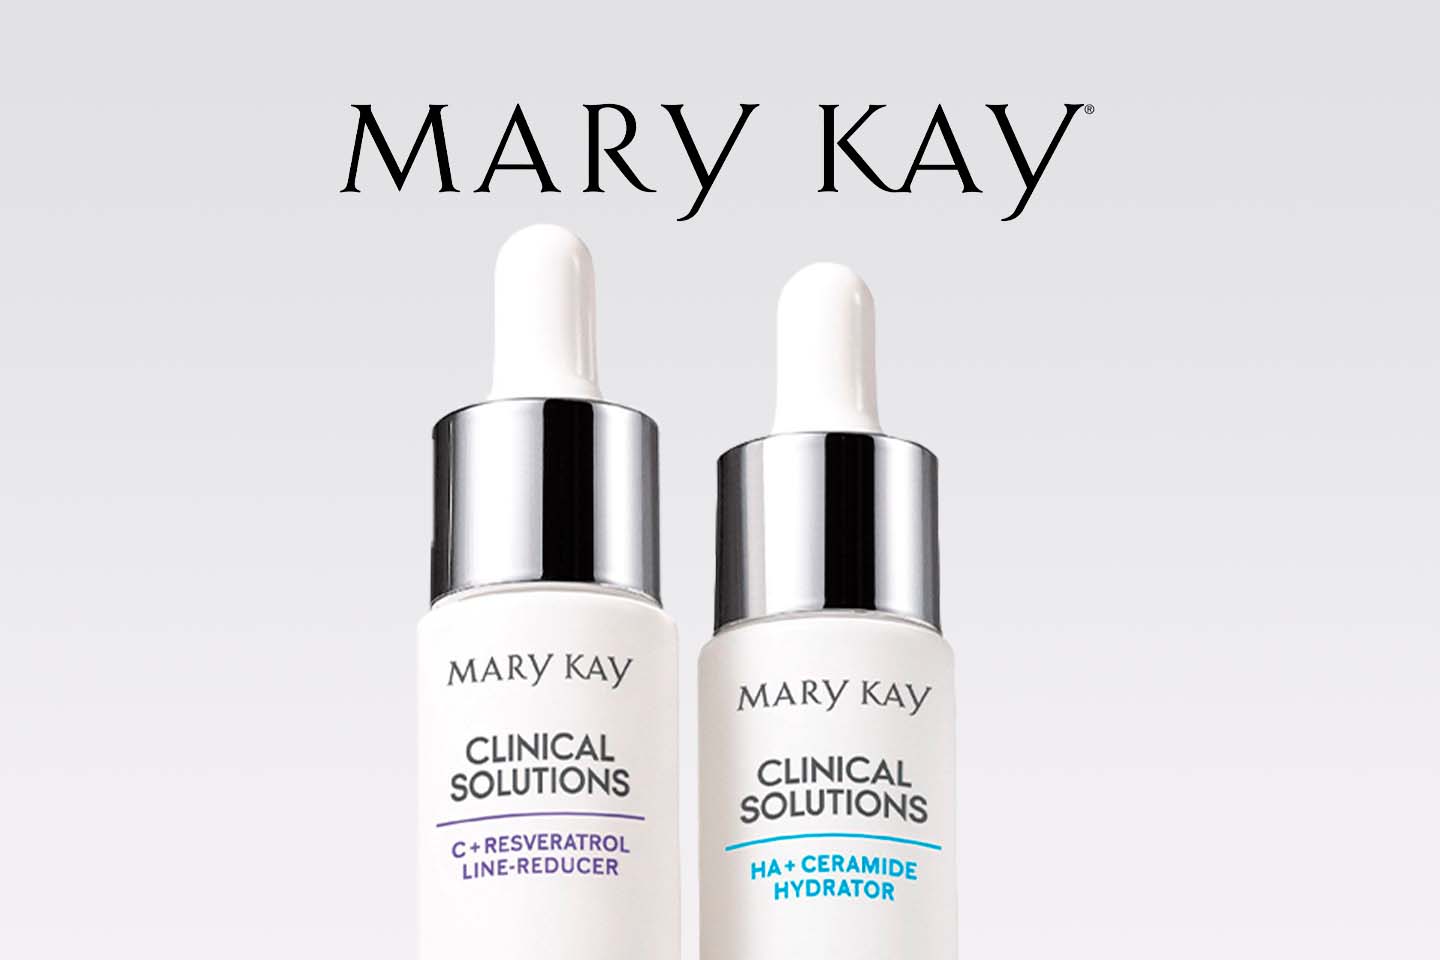 Dos productos para el cuidado de la piel Mary Kay 